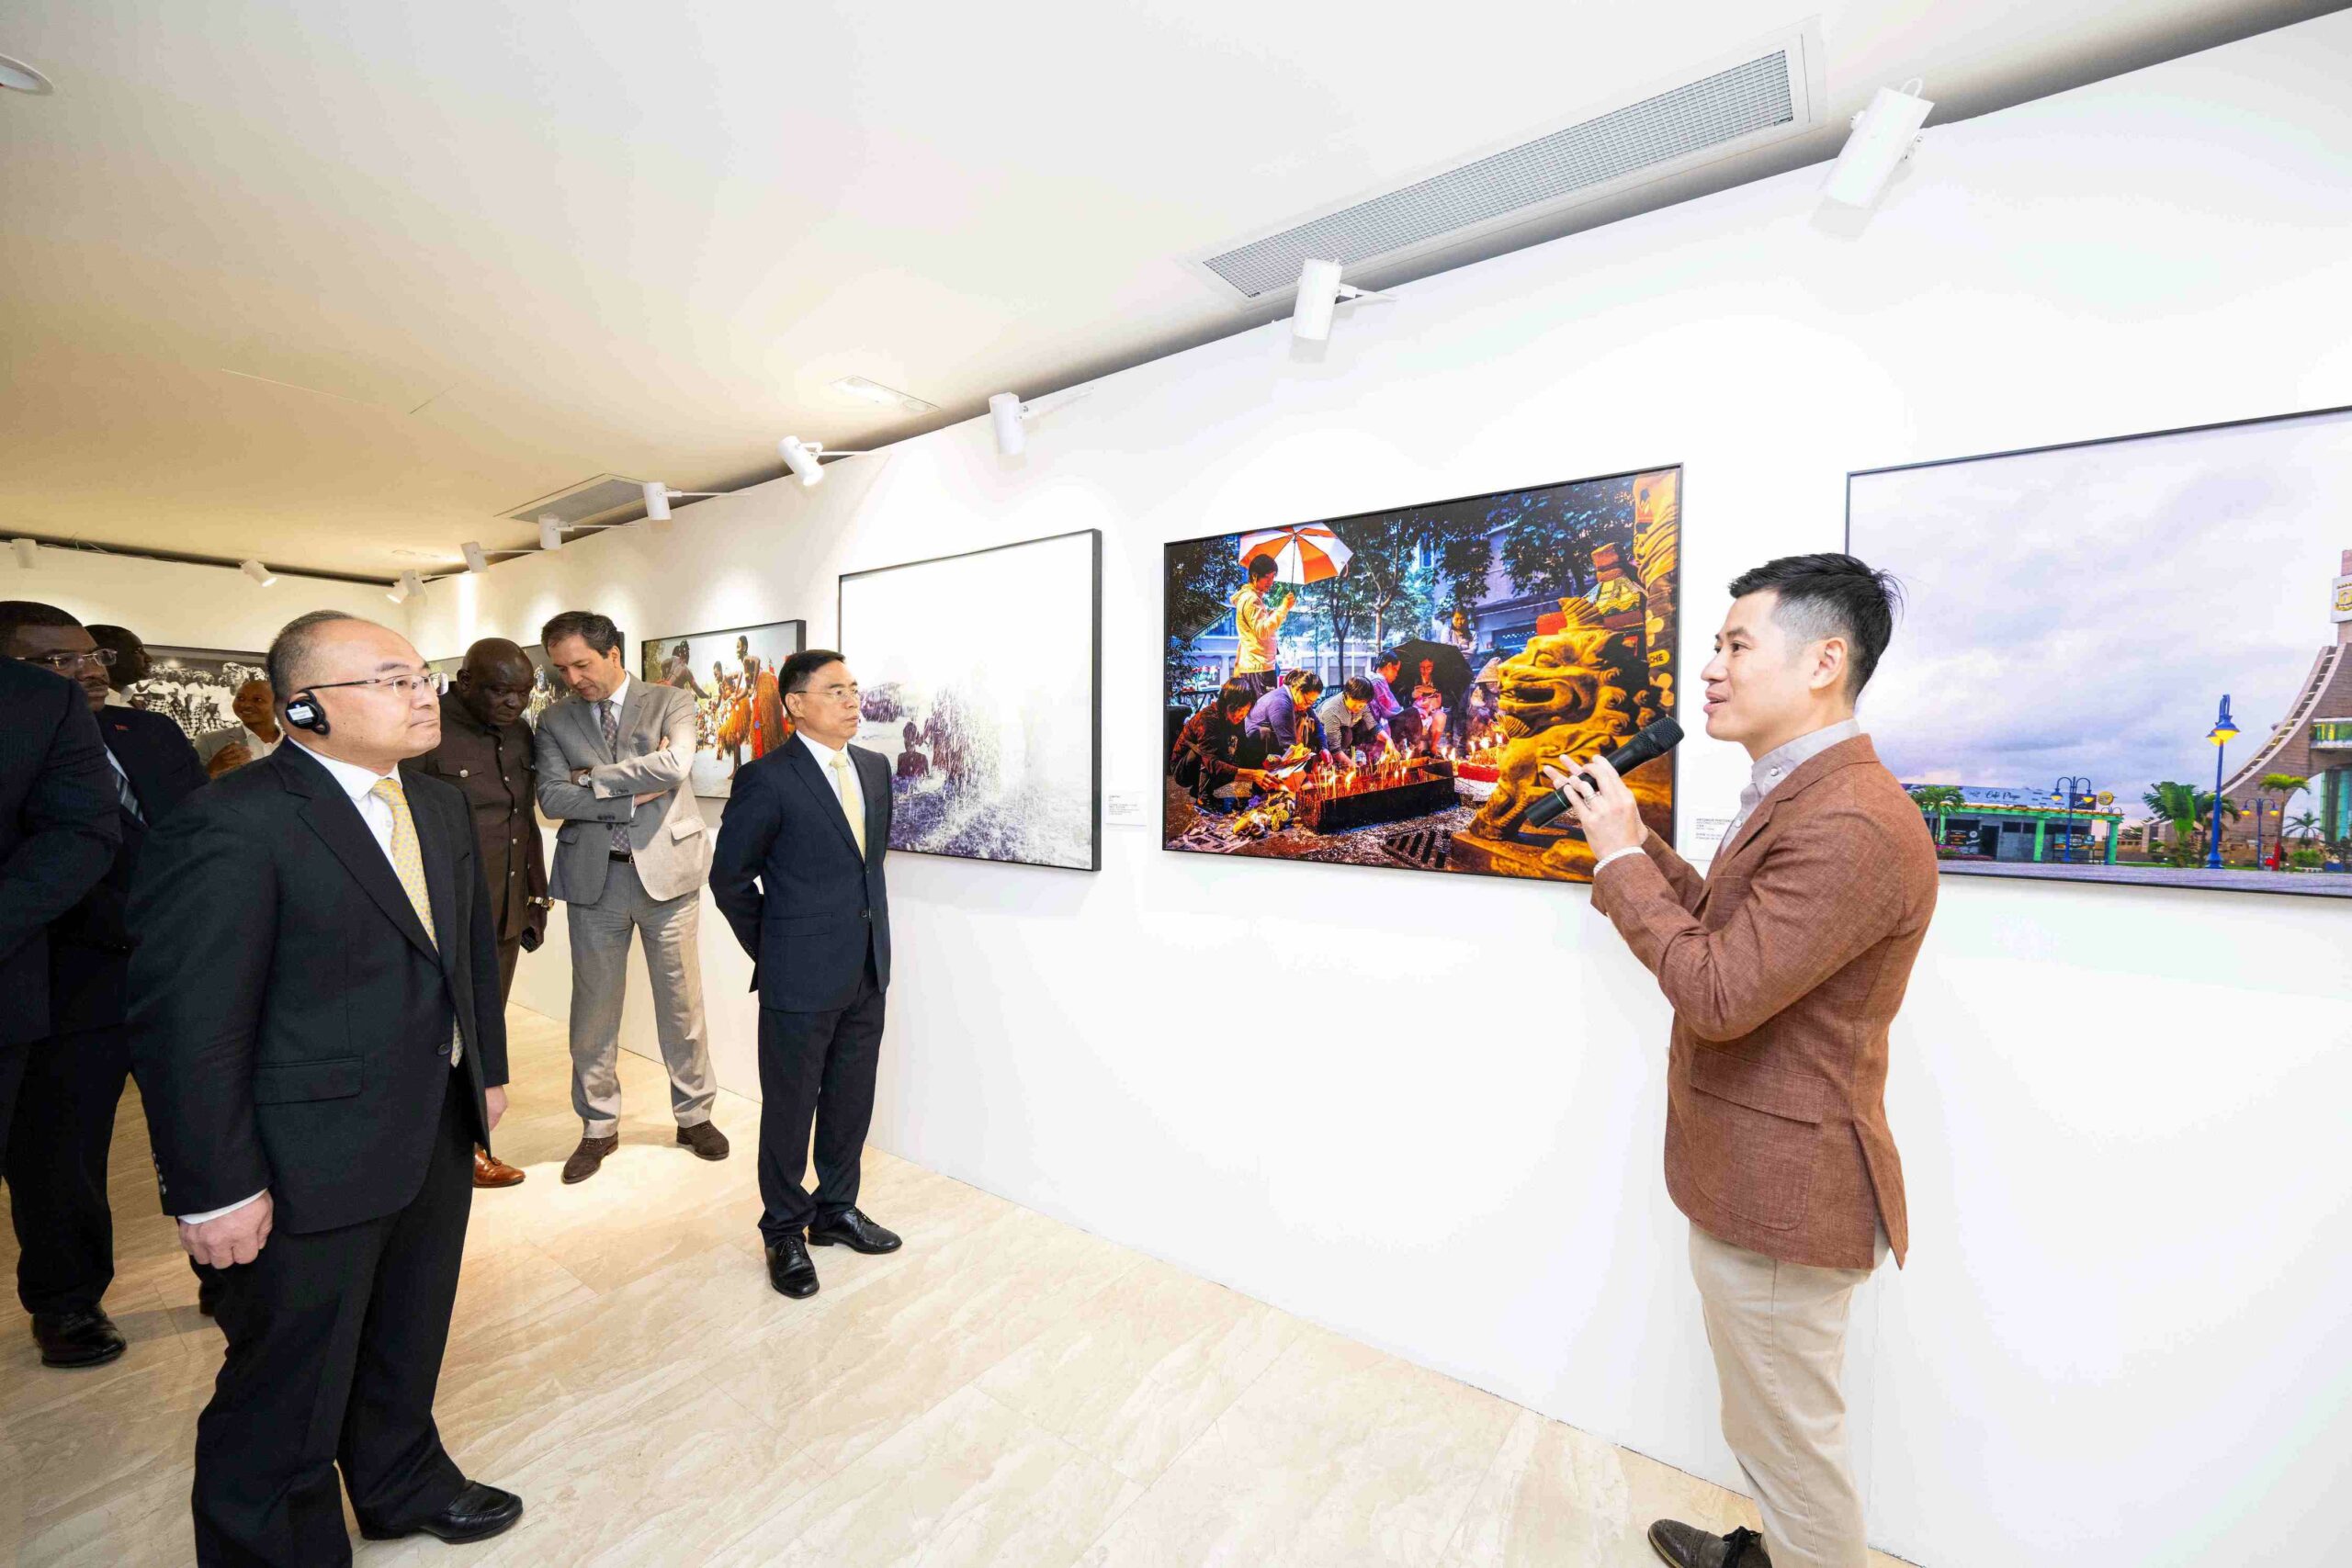 Semana cultural | “Mosaicos Sino-Lusófonos” para ver até Dezembro